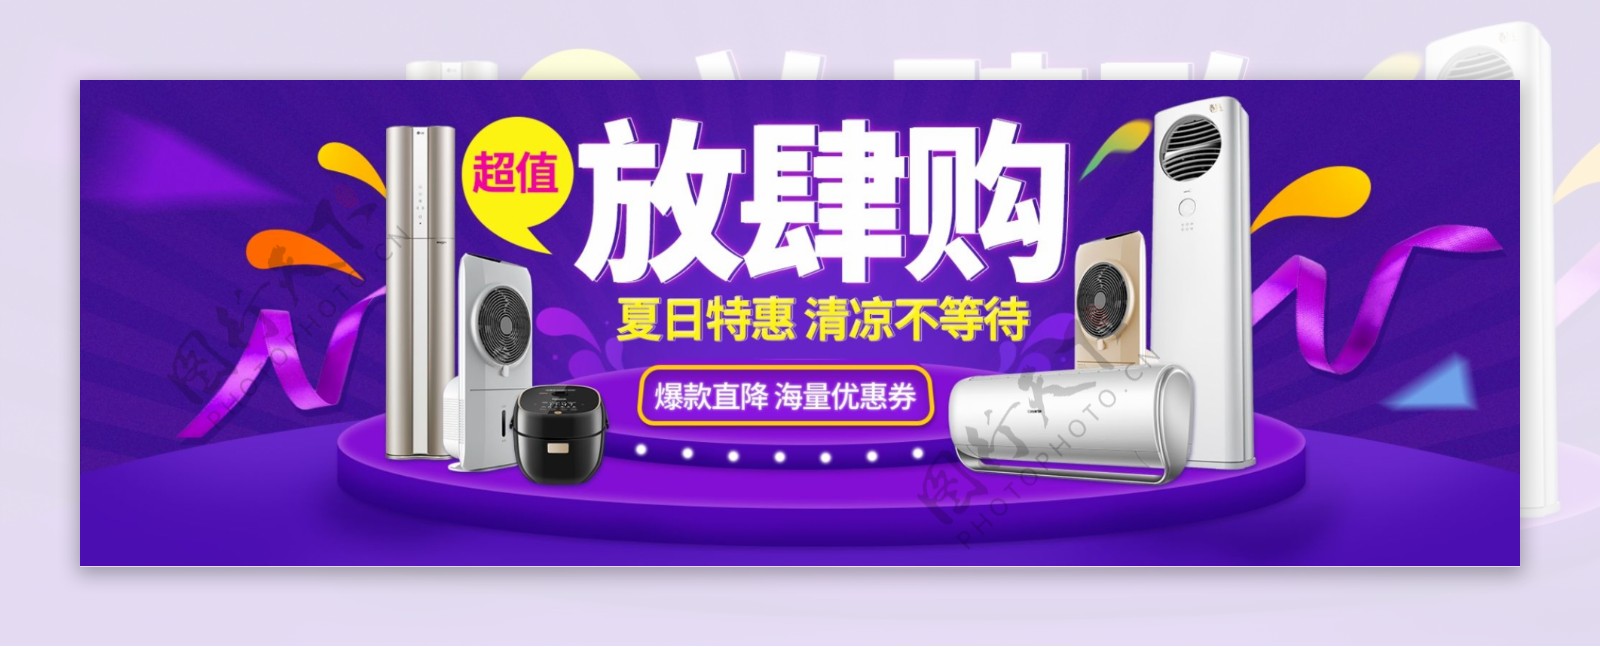 电商淘宝天猫家电夏季促销海报banner模板设计